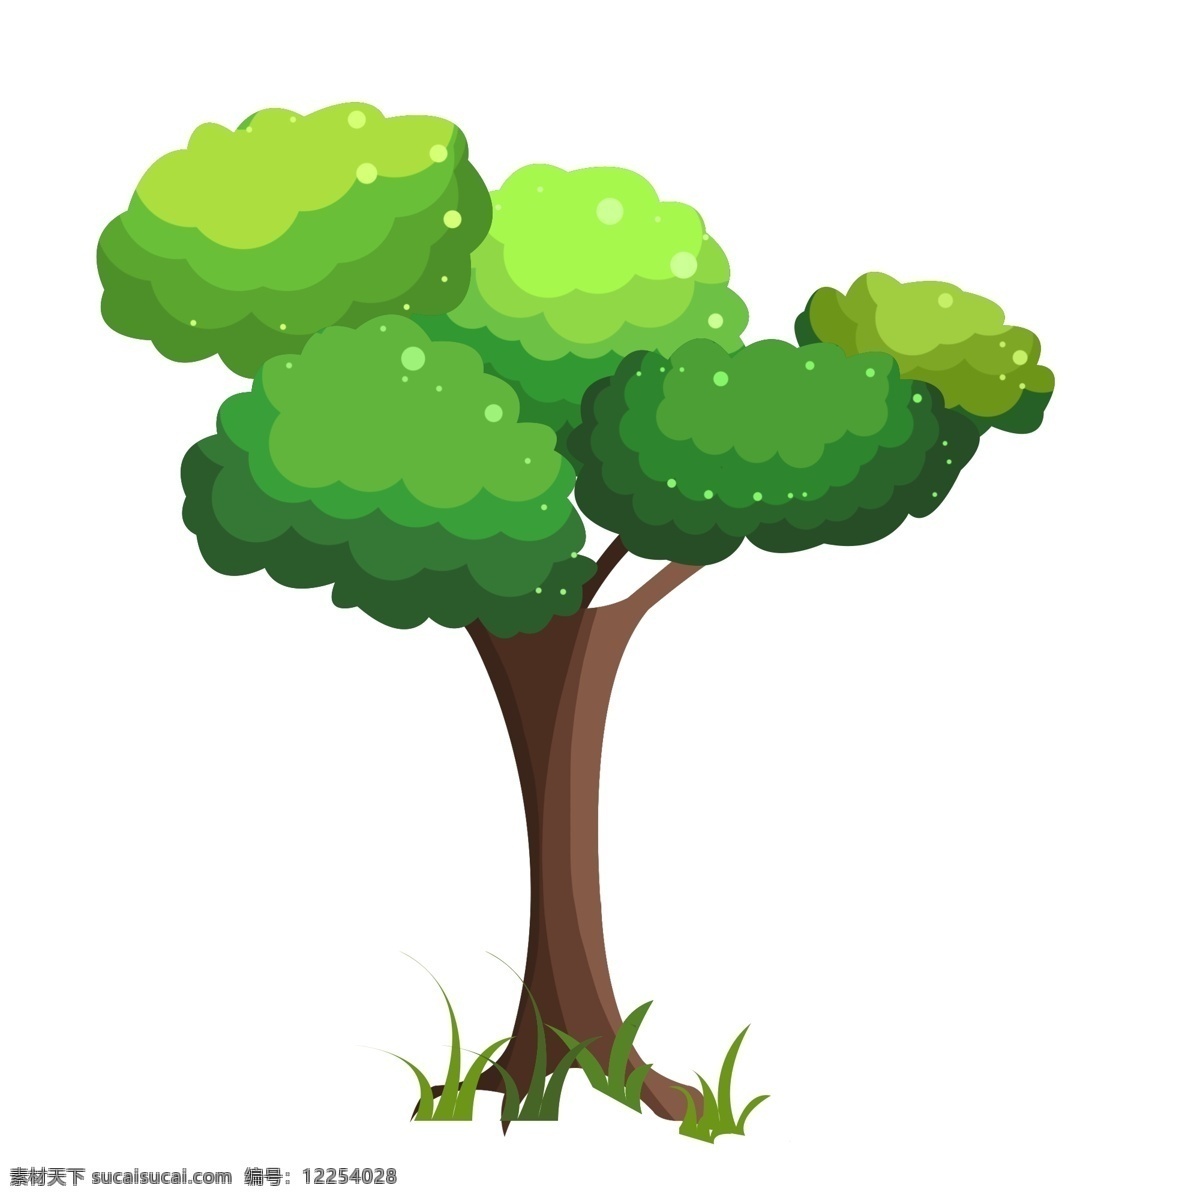 环境 绿色植物 大树 保护 乘凉 夏天 春天 树叶 枝繁叶茂 茂盛 生机勃勃 种植